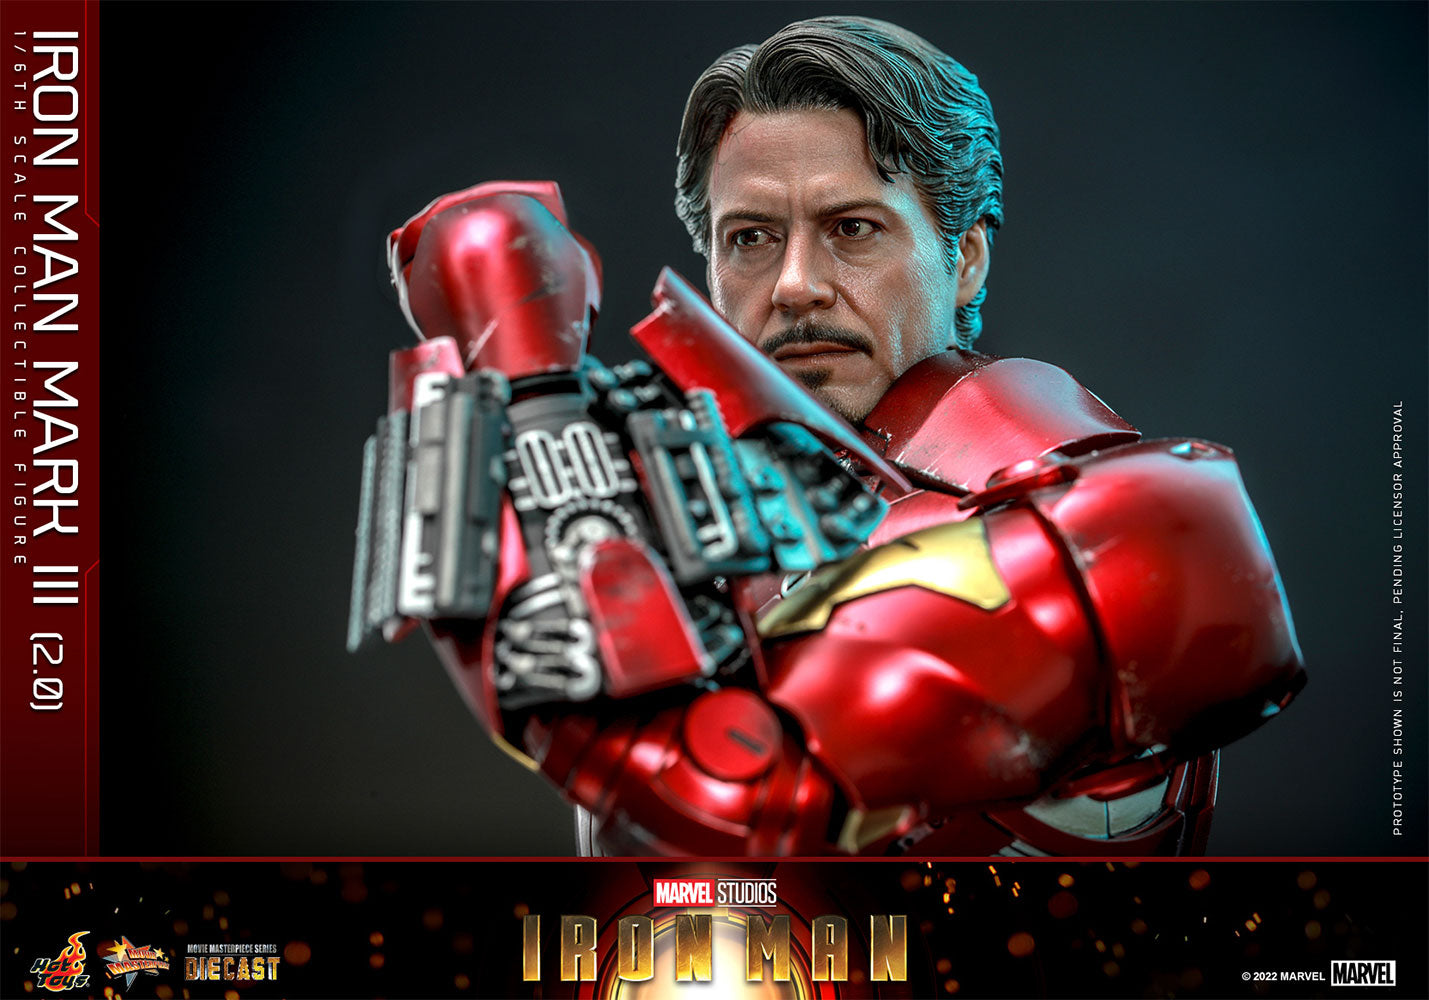 Hot Toys - Marvel - Iron Man Mark III (2.0) - MMS664 1:6 Figure